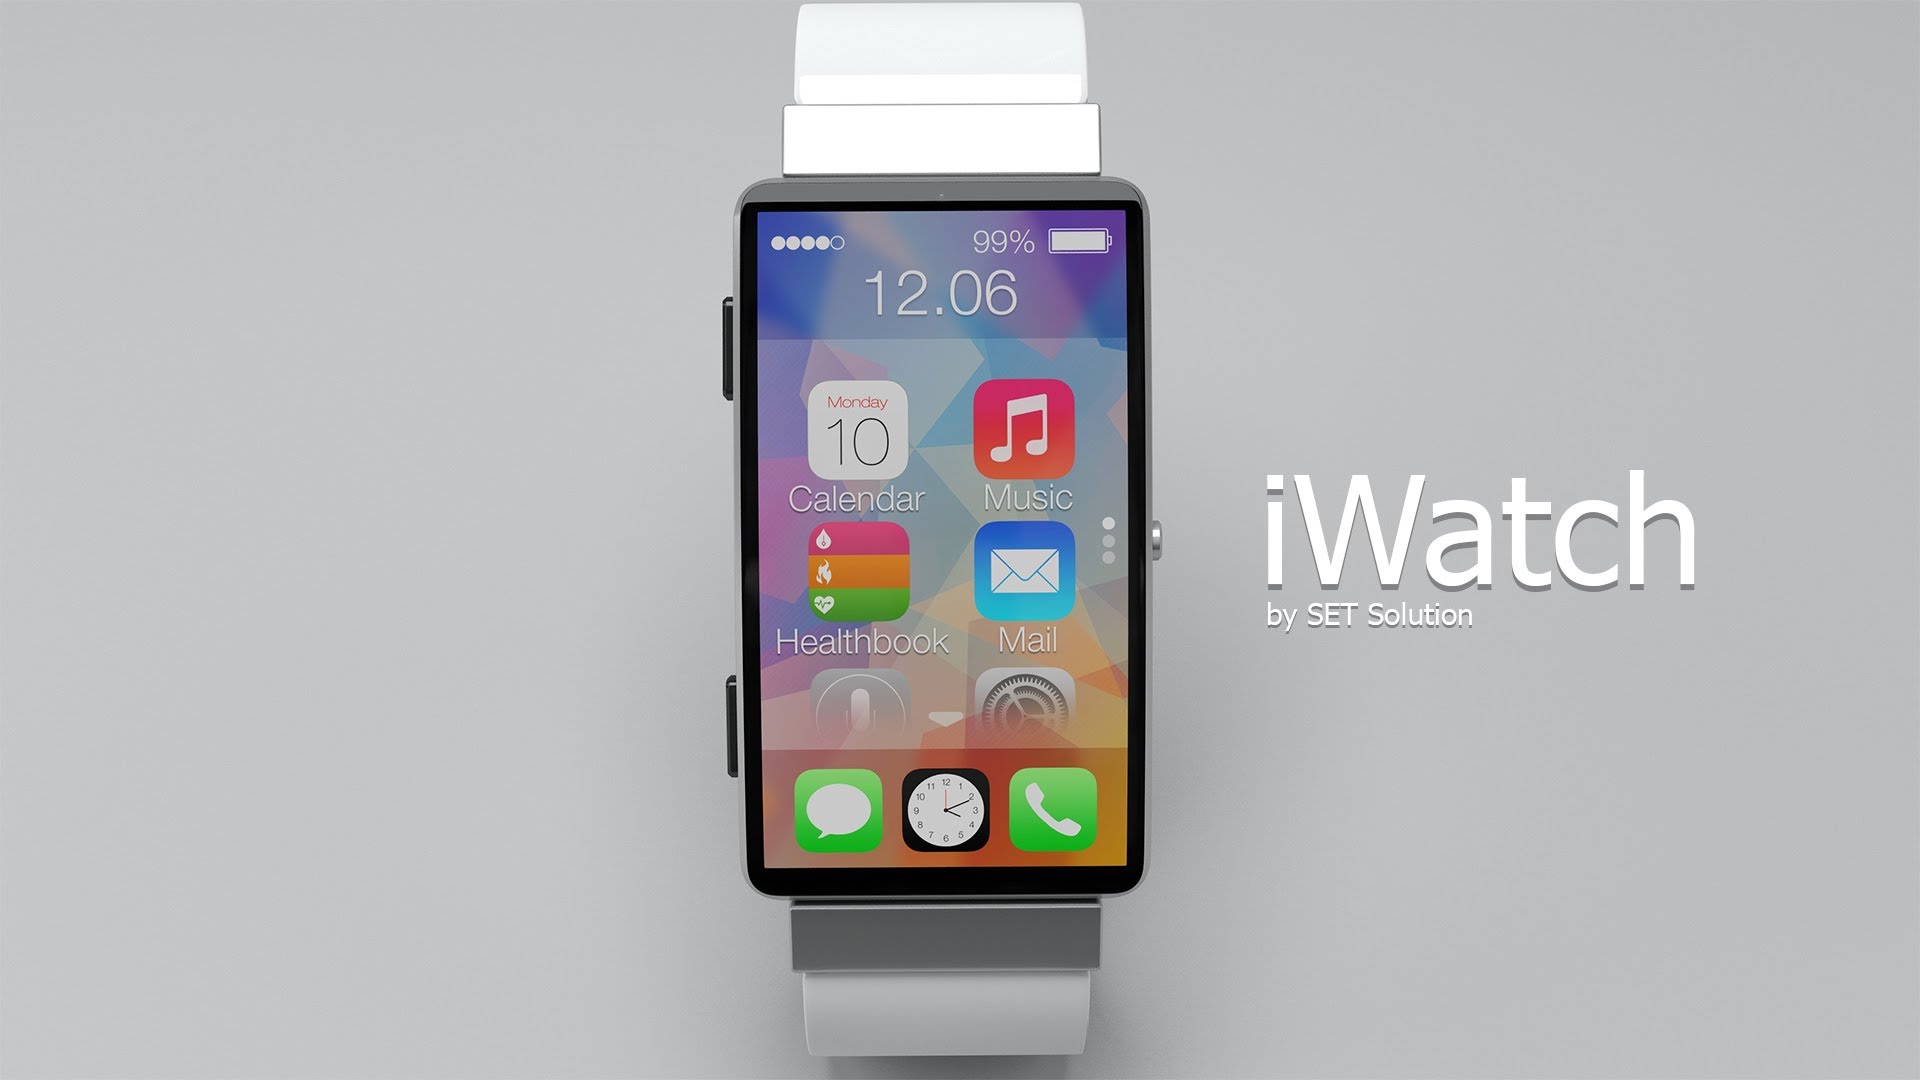 ลือ Apple Watch จะมีให้เลือกทั้งจอ 1.6 และ 1.8 นิ้ว แบ่งเป็น 3 โมเดล ใช้กระจก Sapphire